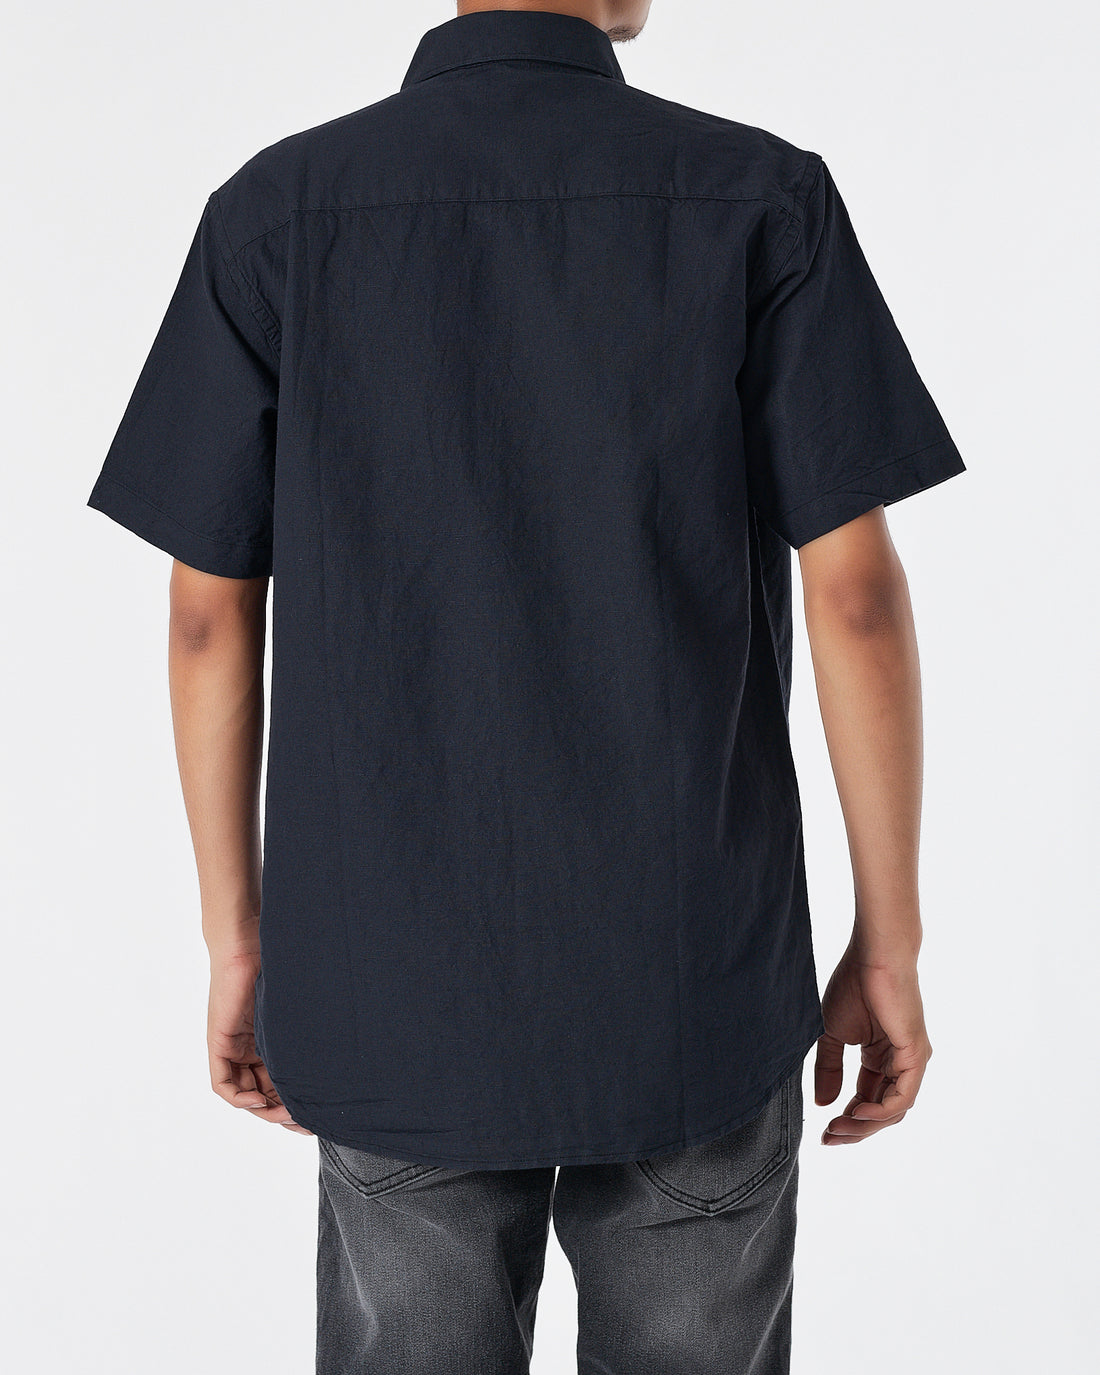 CK Linen Men Black Shirts Short Sleeve 20.90